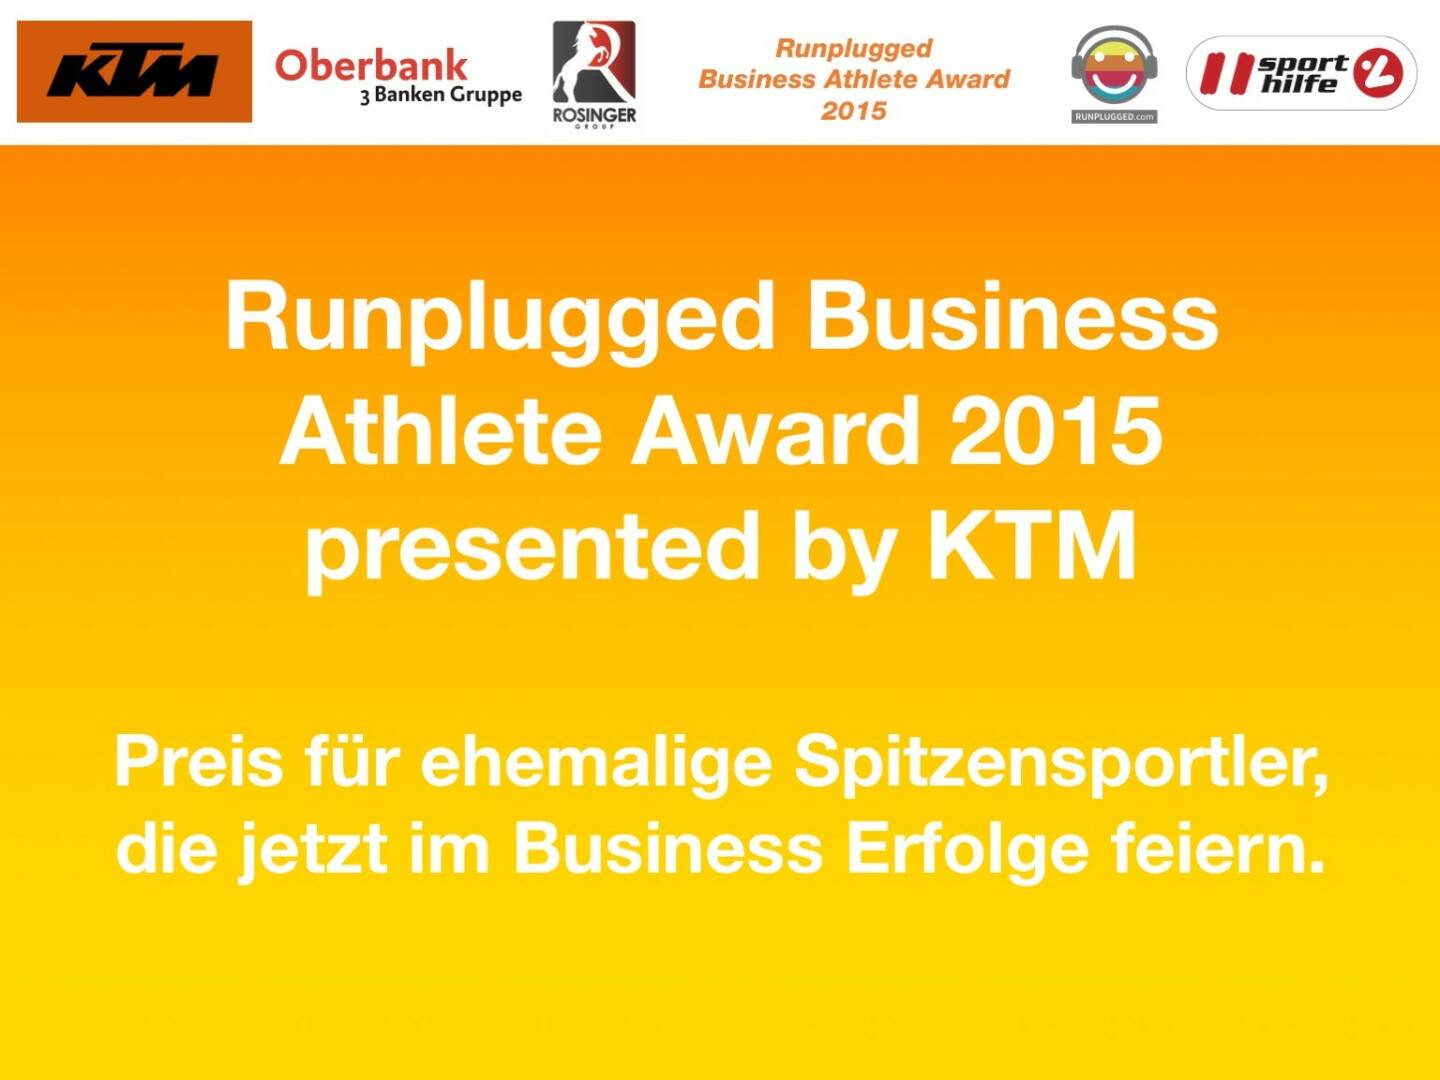 Runplugged Business Athlete Award 2015 presented by KTM, Preis für ehemalige Spitzensportler, die jetzt im Business Erfolge feiern.